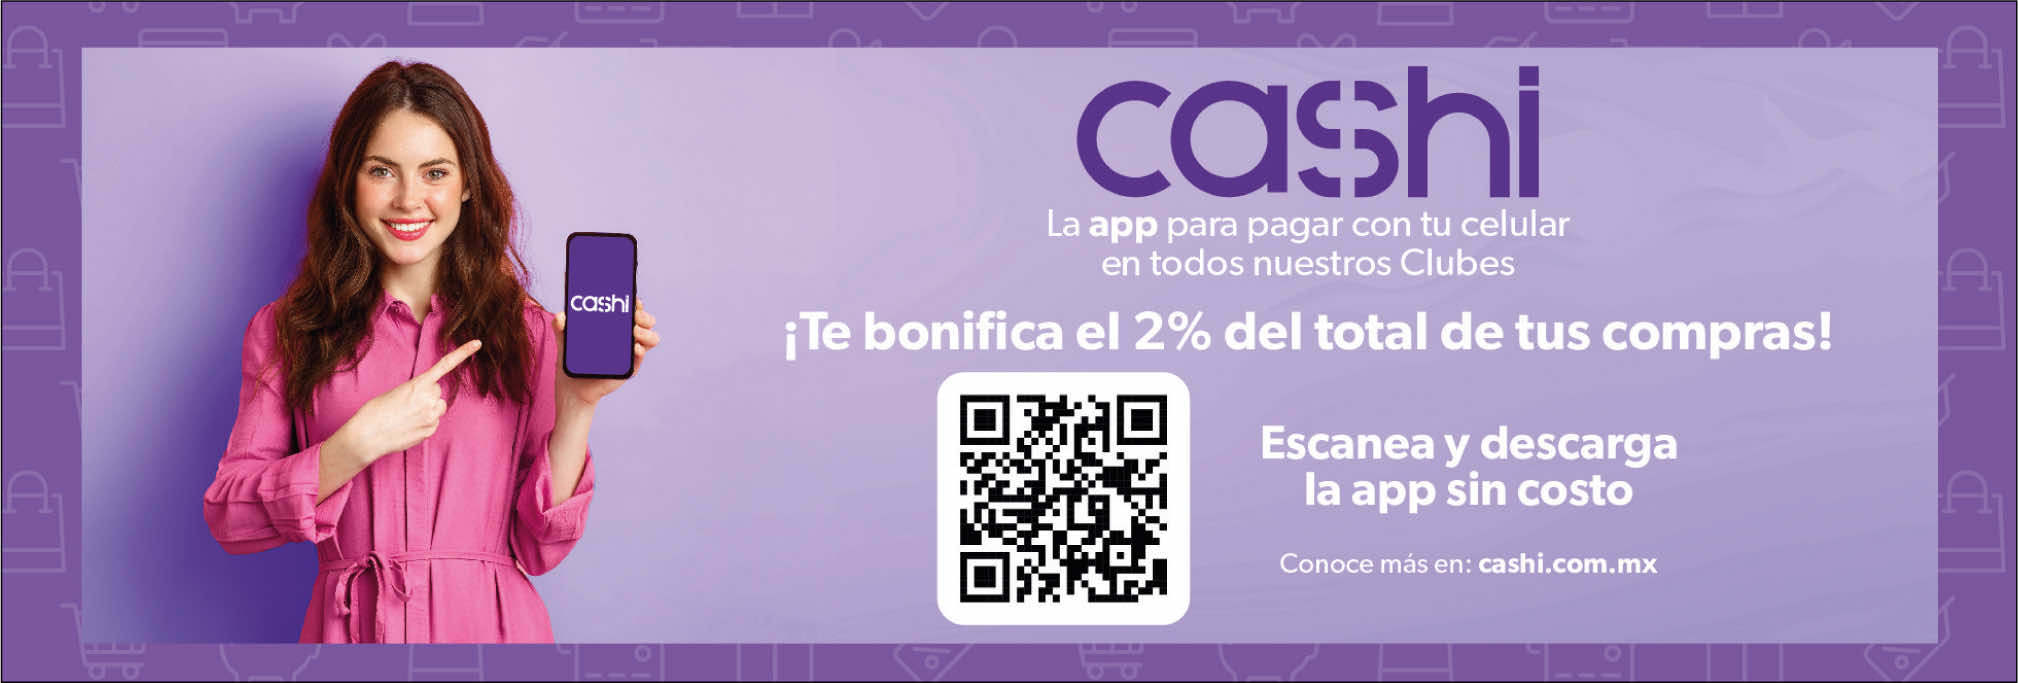 Cashi app para pagar con tu celular